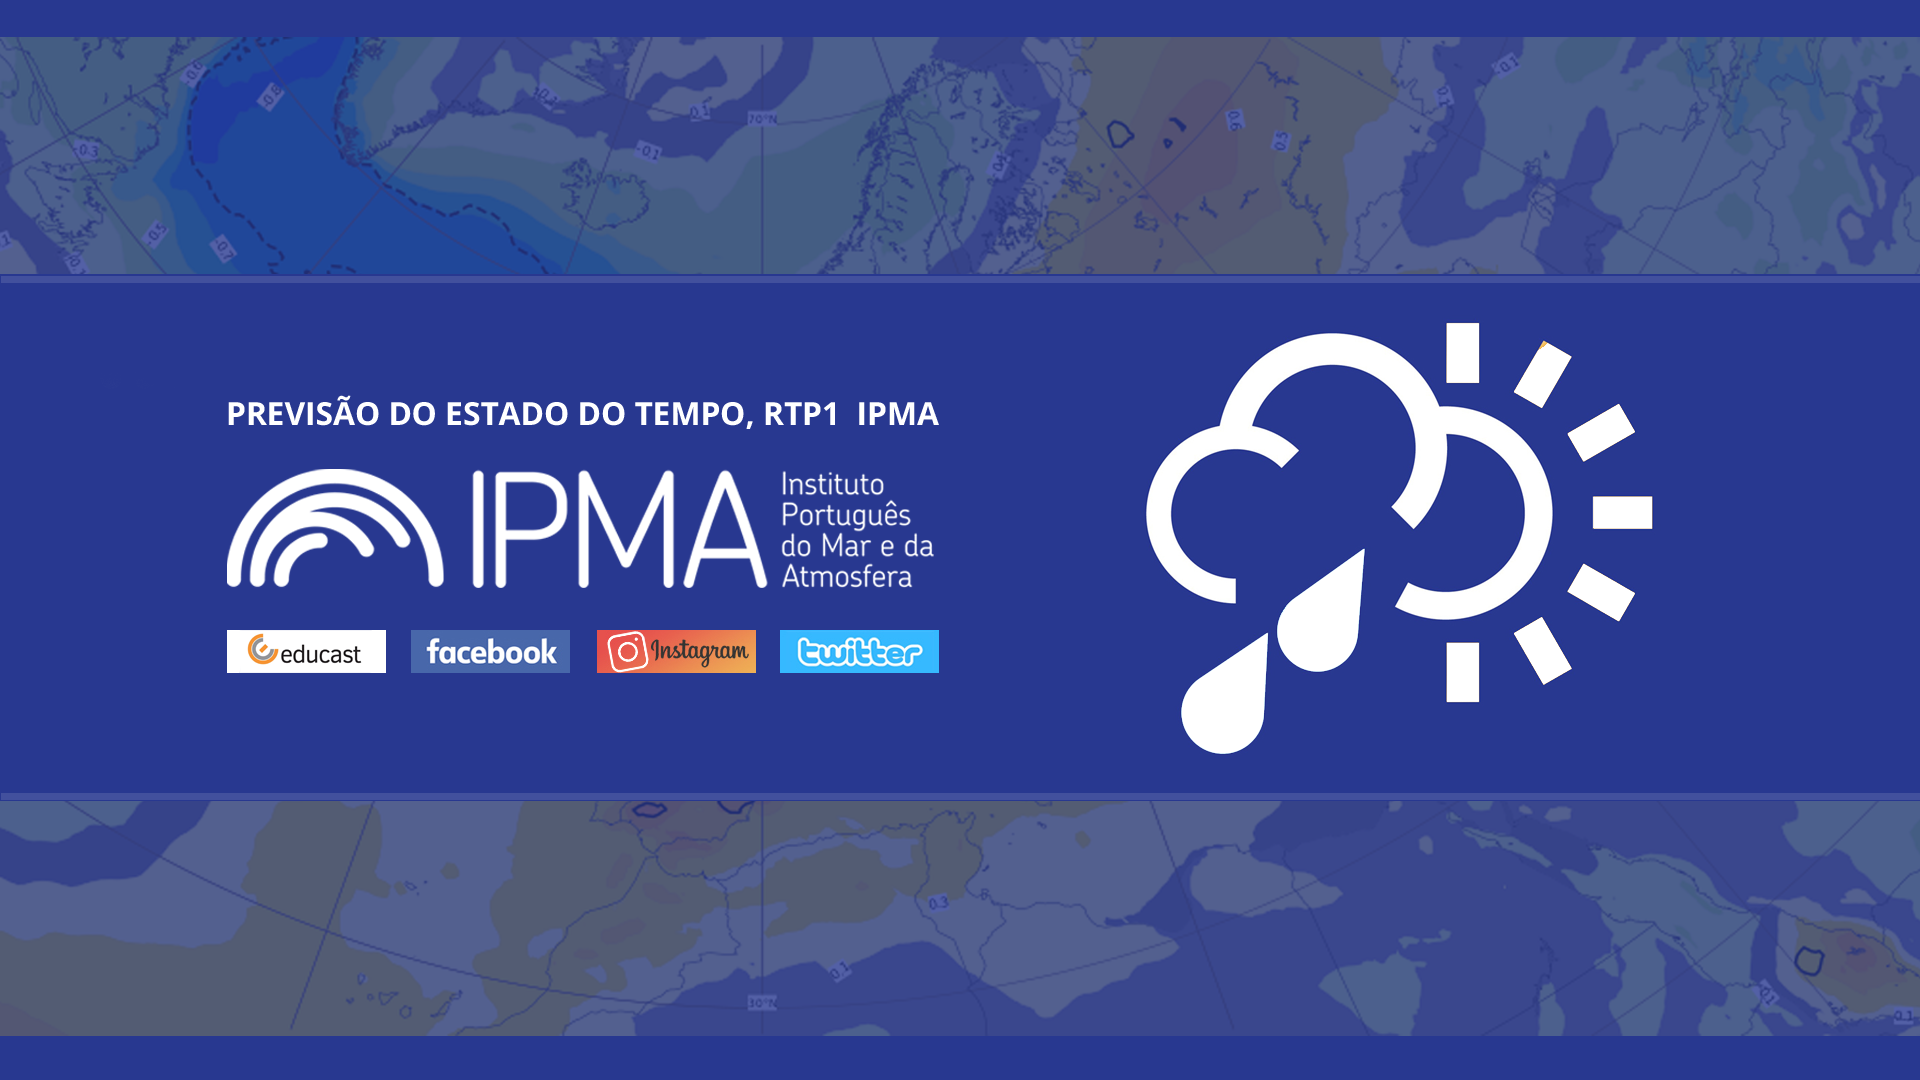  Previsão do estado do tempo, RTP1, 08-03-2022, IPMA.